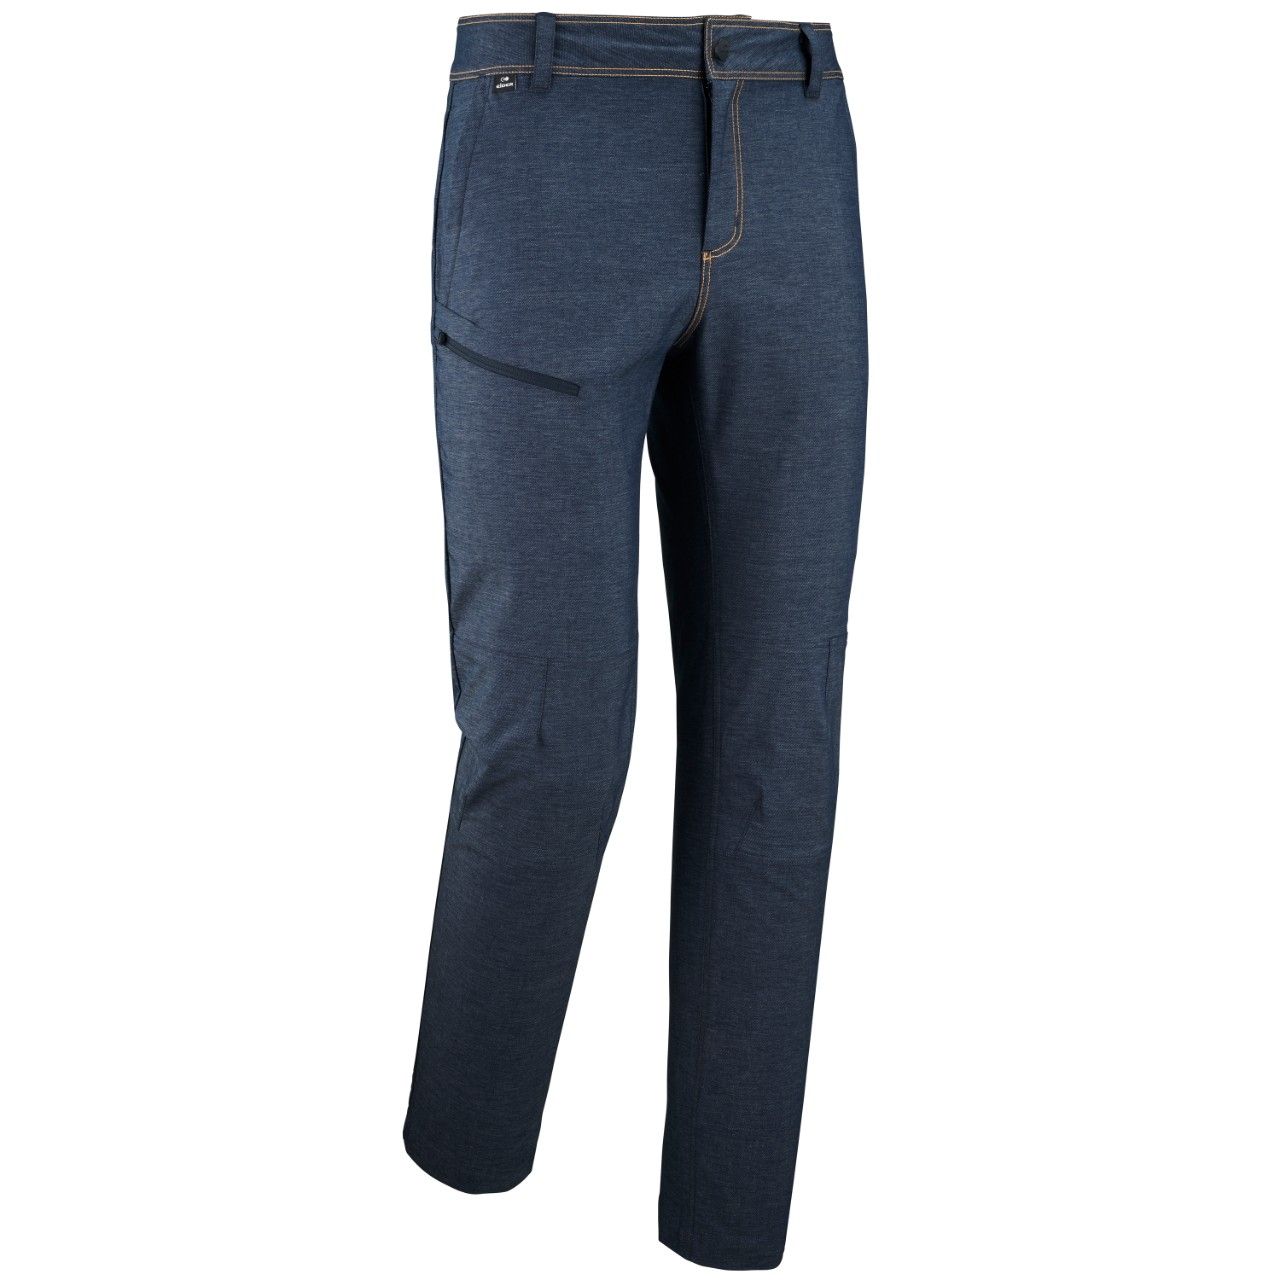 Pantalon Dalston 2.0 blue jean 